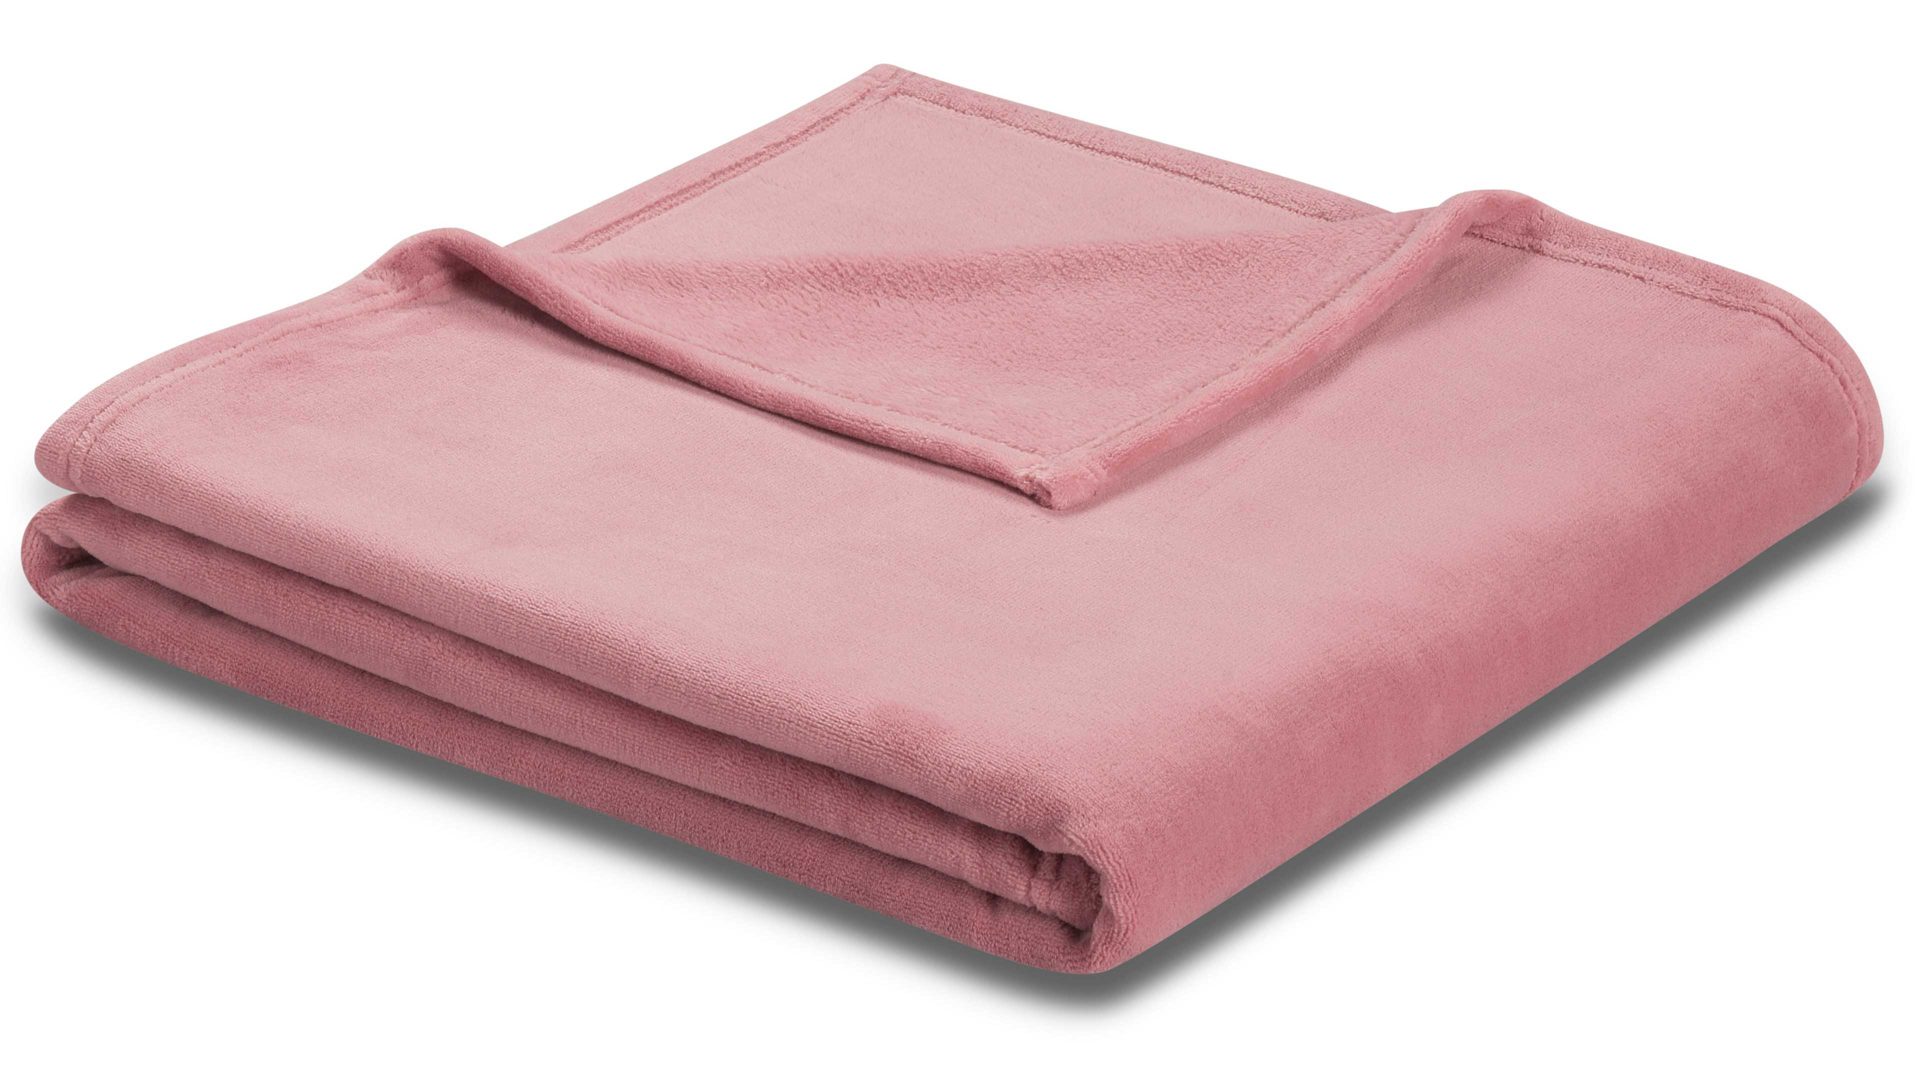 Wohndecke Biederlack aus Kunstfaser in Pink biederlack Wohndecke soft & cover Altrosa – ca. 150 x 200 cm